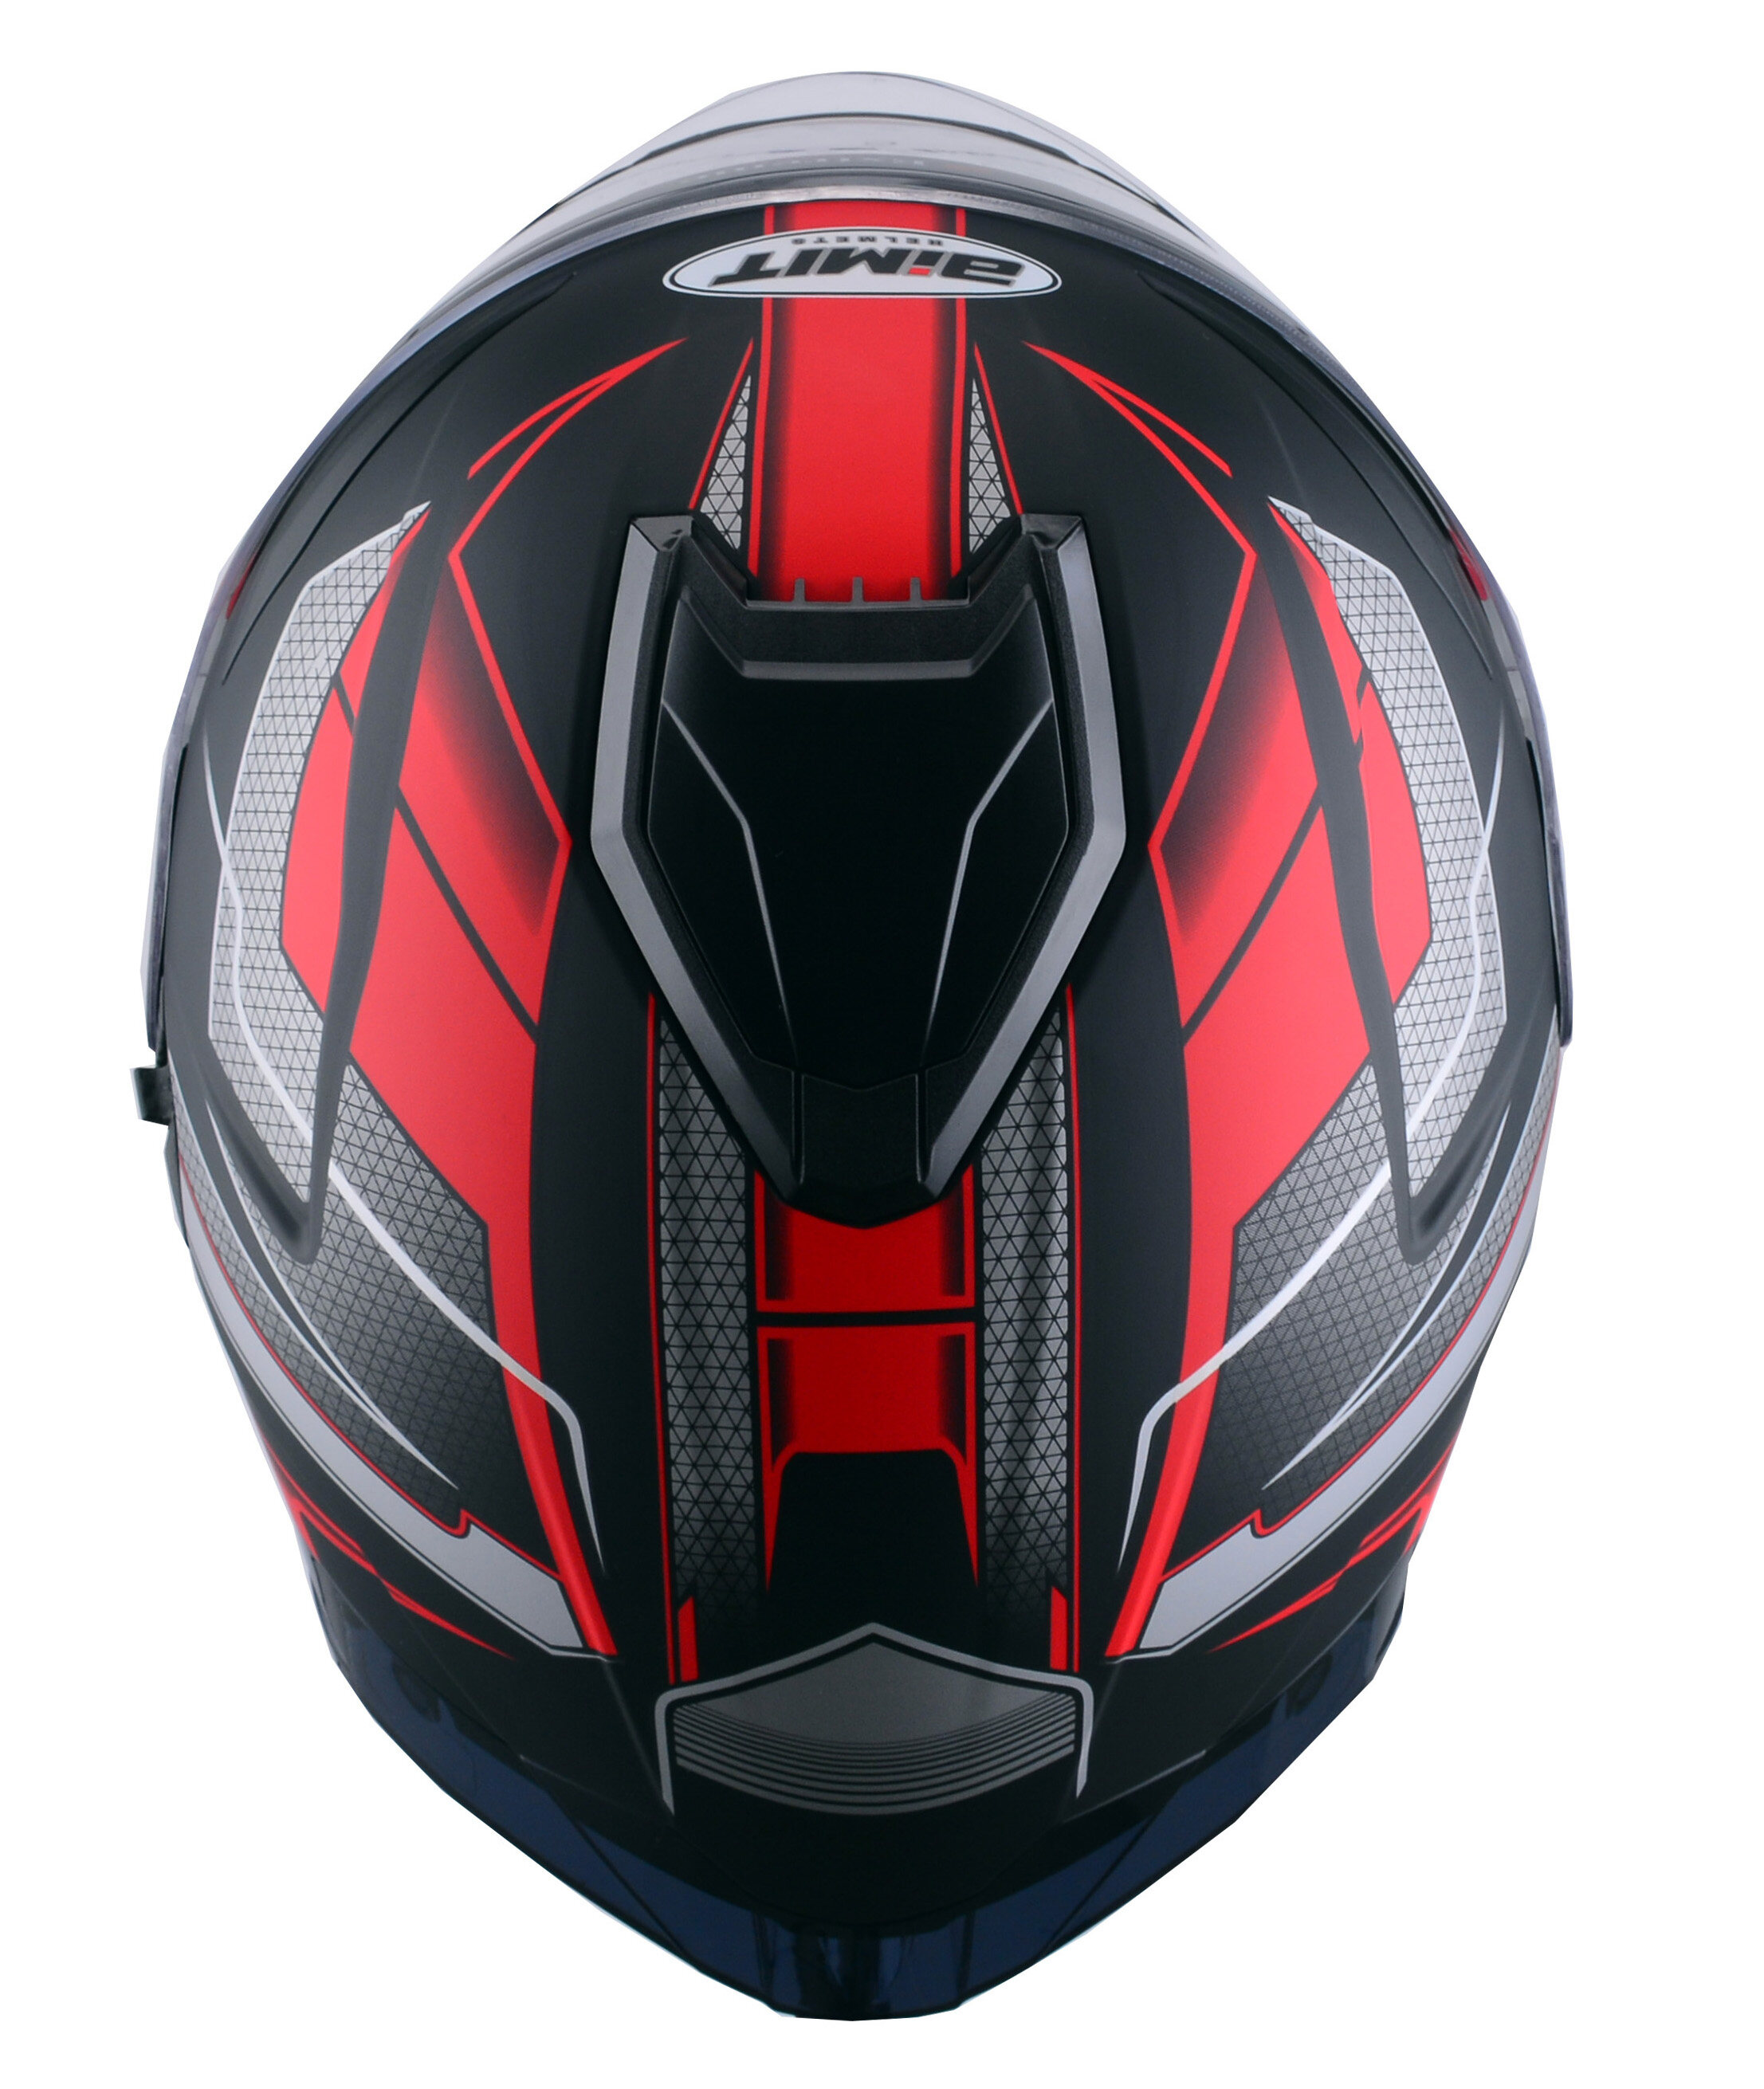 ABS Motorbike Helmet wholesale, ABS Motorcycle Helmet wholesale, ABS Full Face Helmet wholesale, professional ABS Helmet, cheap ABS Helmet